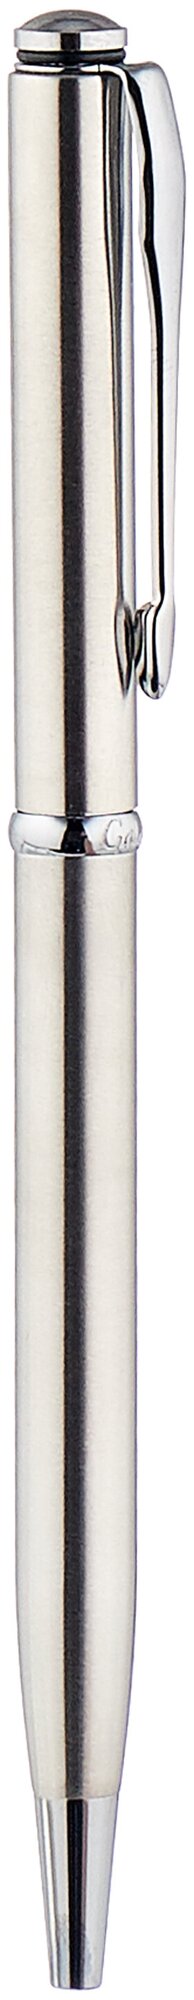 Ручка подарочная шариковая GALANT Arrow Chrome, корпус серебр., хром.детали, 0,7мм, синяя, 140408